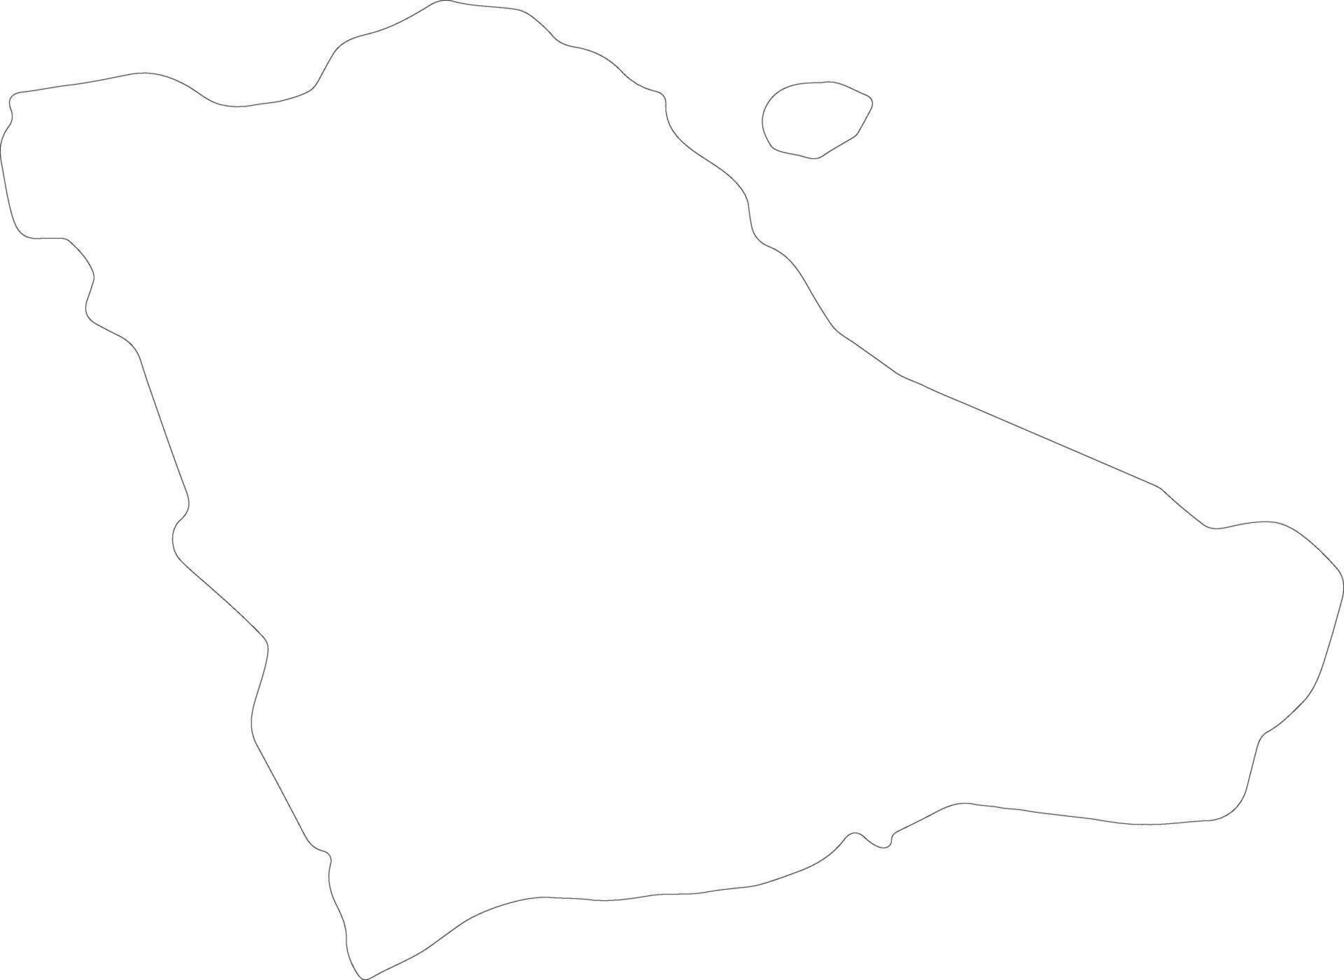 gegharkunik Armenia schema carta geografica vettore